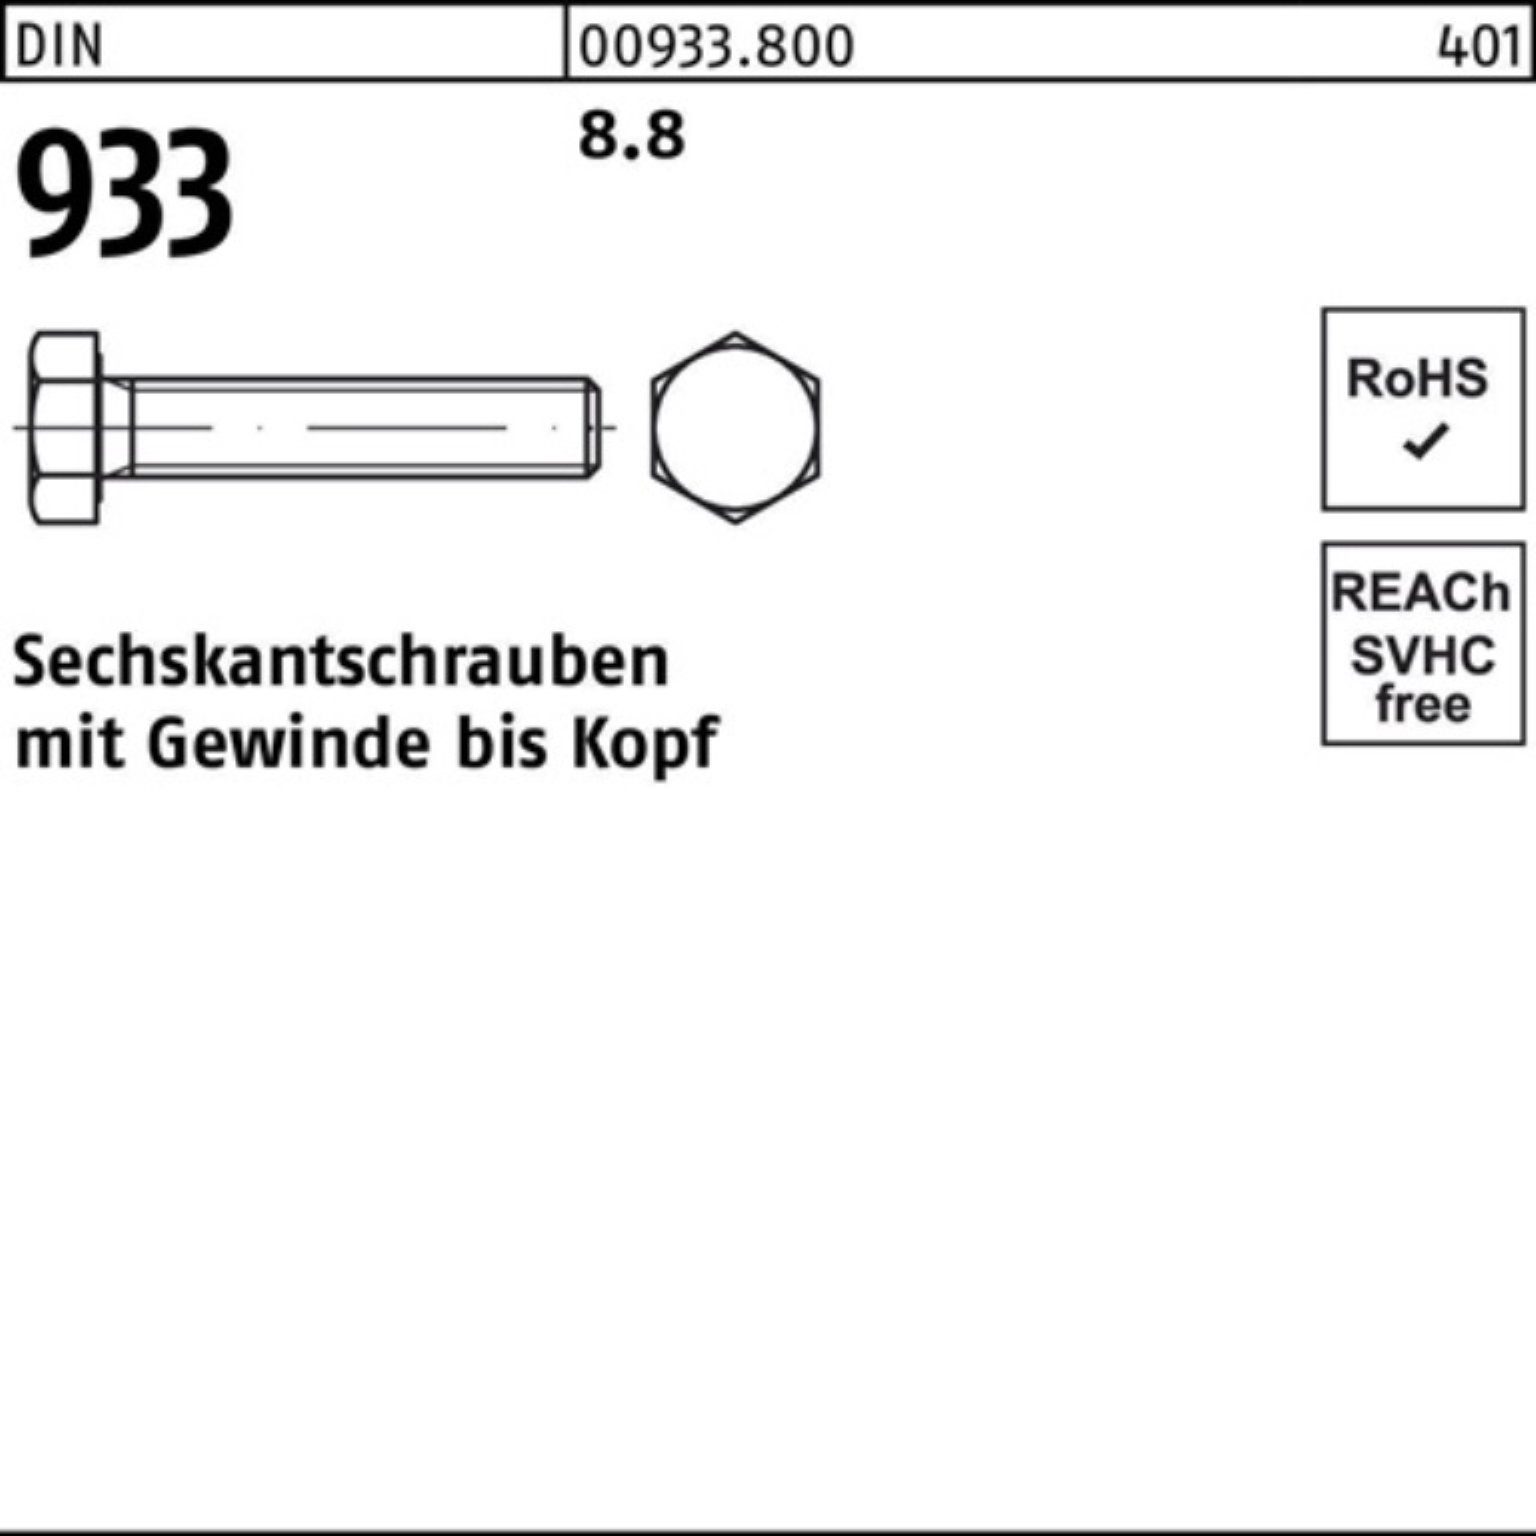 Sechskantschraube VG 12 M4x 8.8 Reyher Sechskantschraube 933 Stück DIN 100 933 DIN 100er Pack